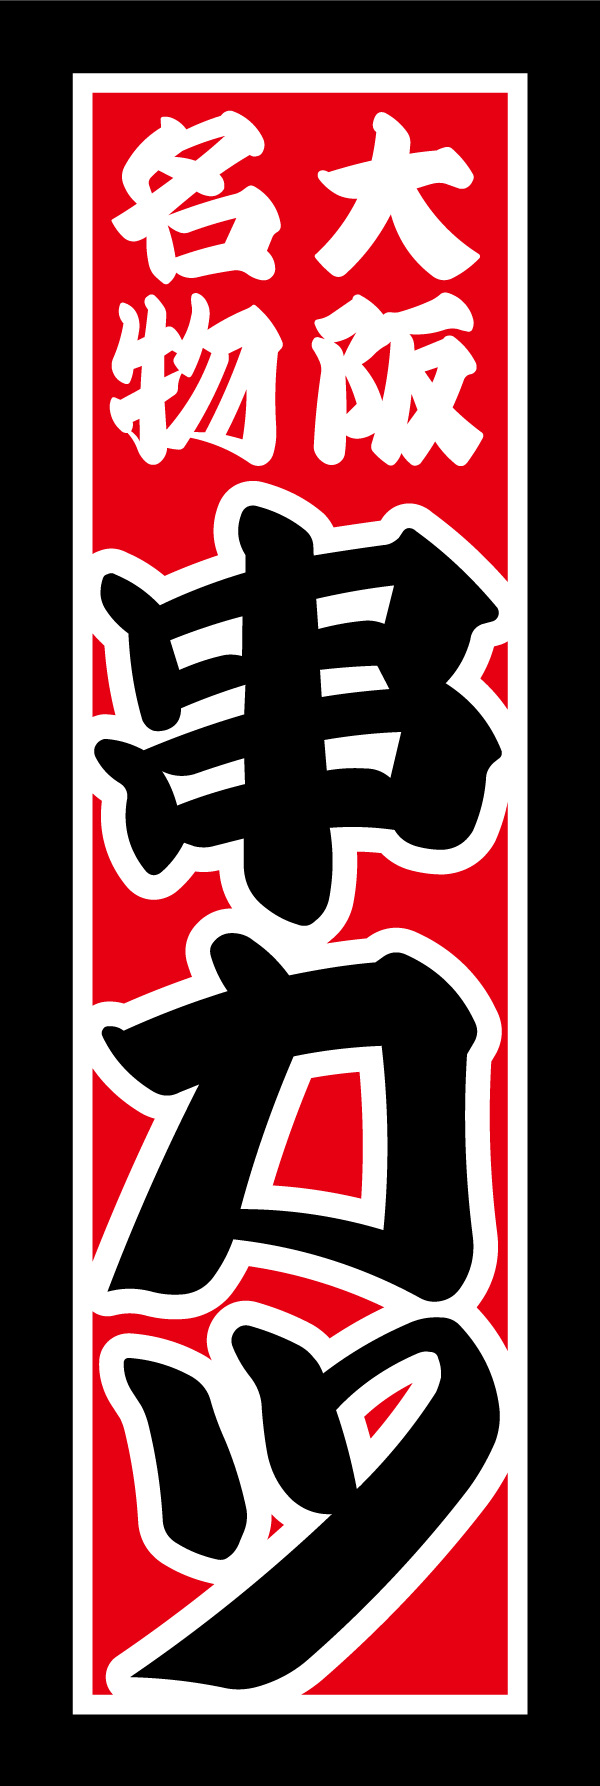 串かつ 07 「串カツ」の幟です。大阪名物の串カツをイメージし、コテコテで派手なデザインにしあげました。(Y.M)